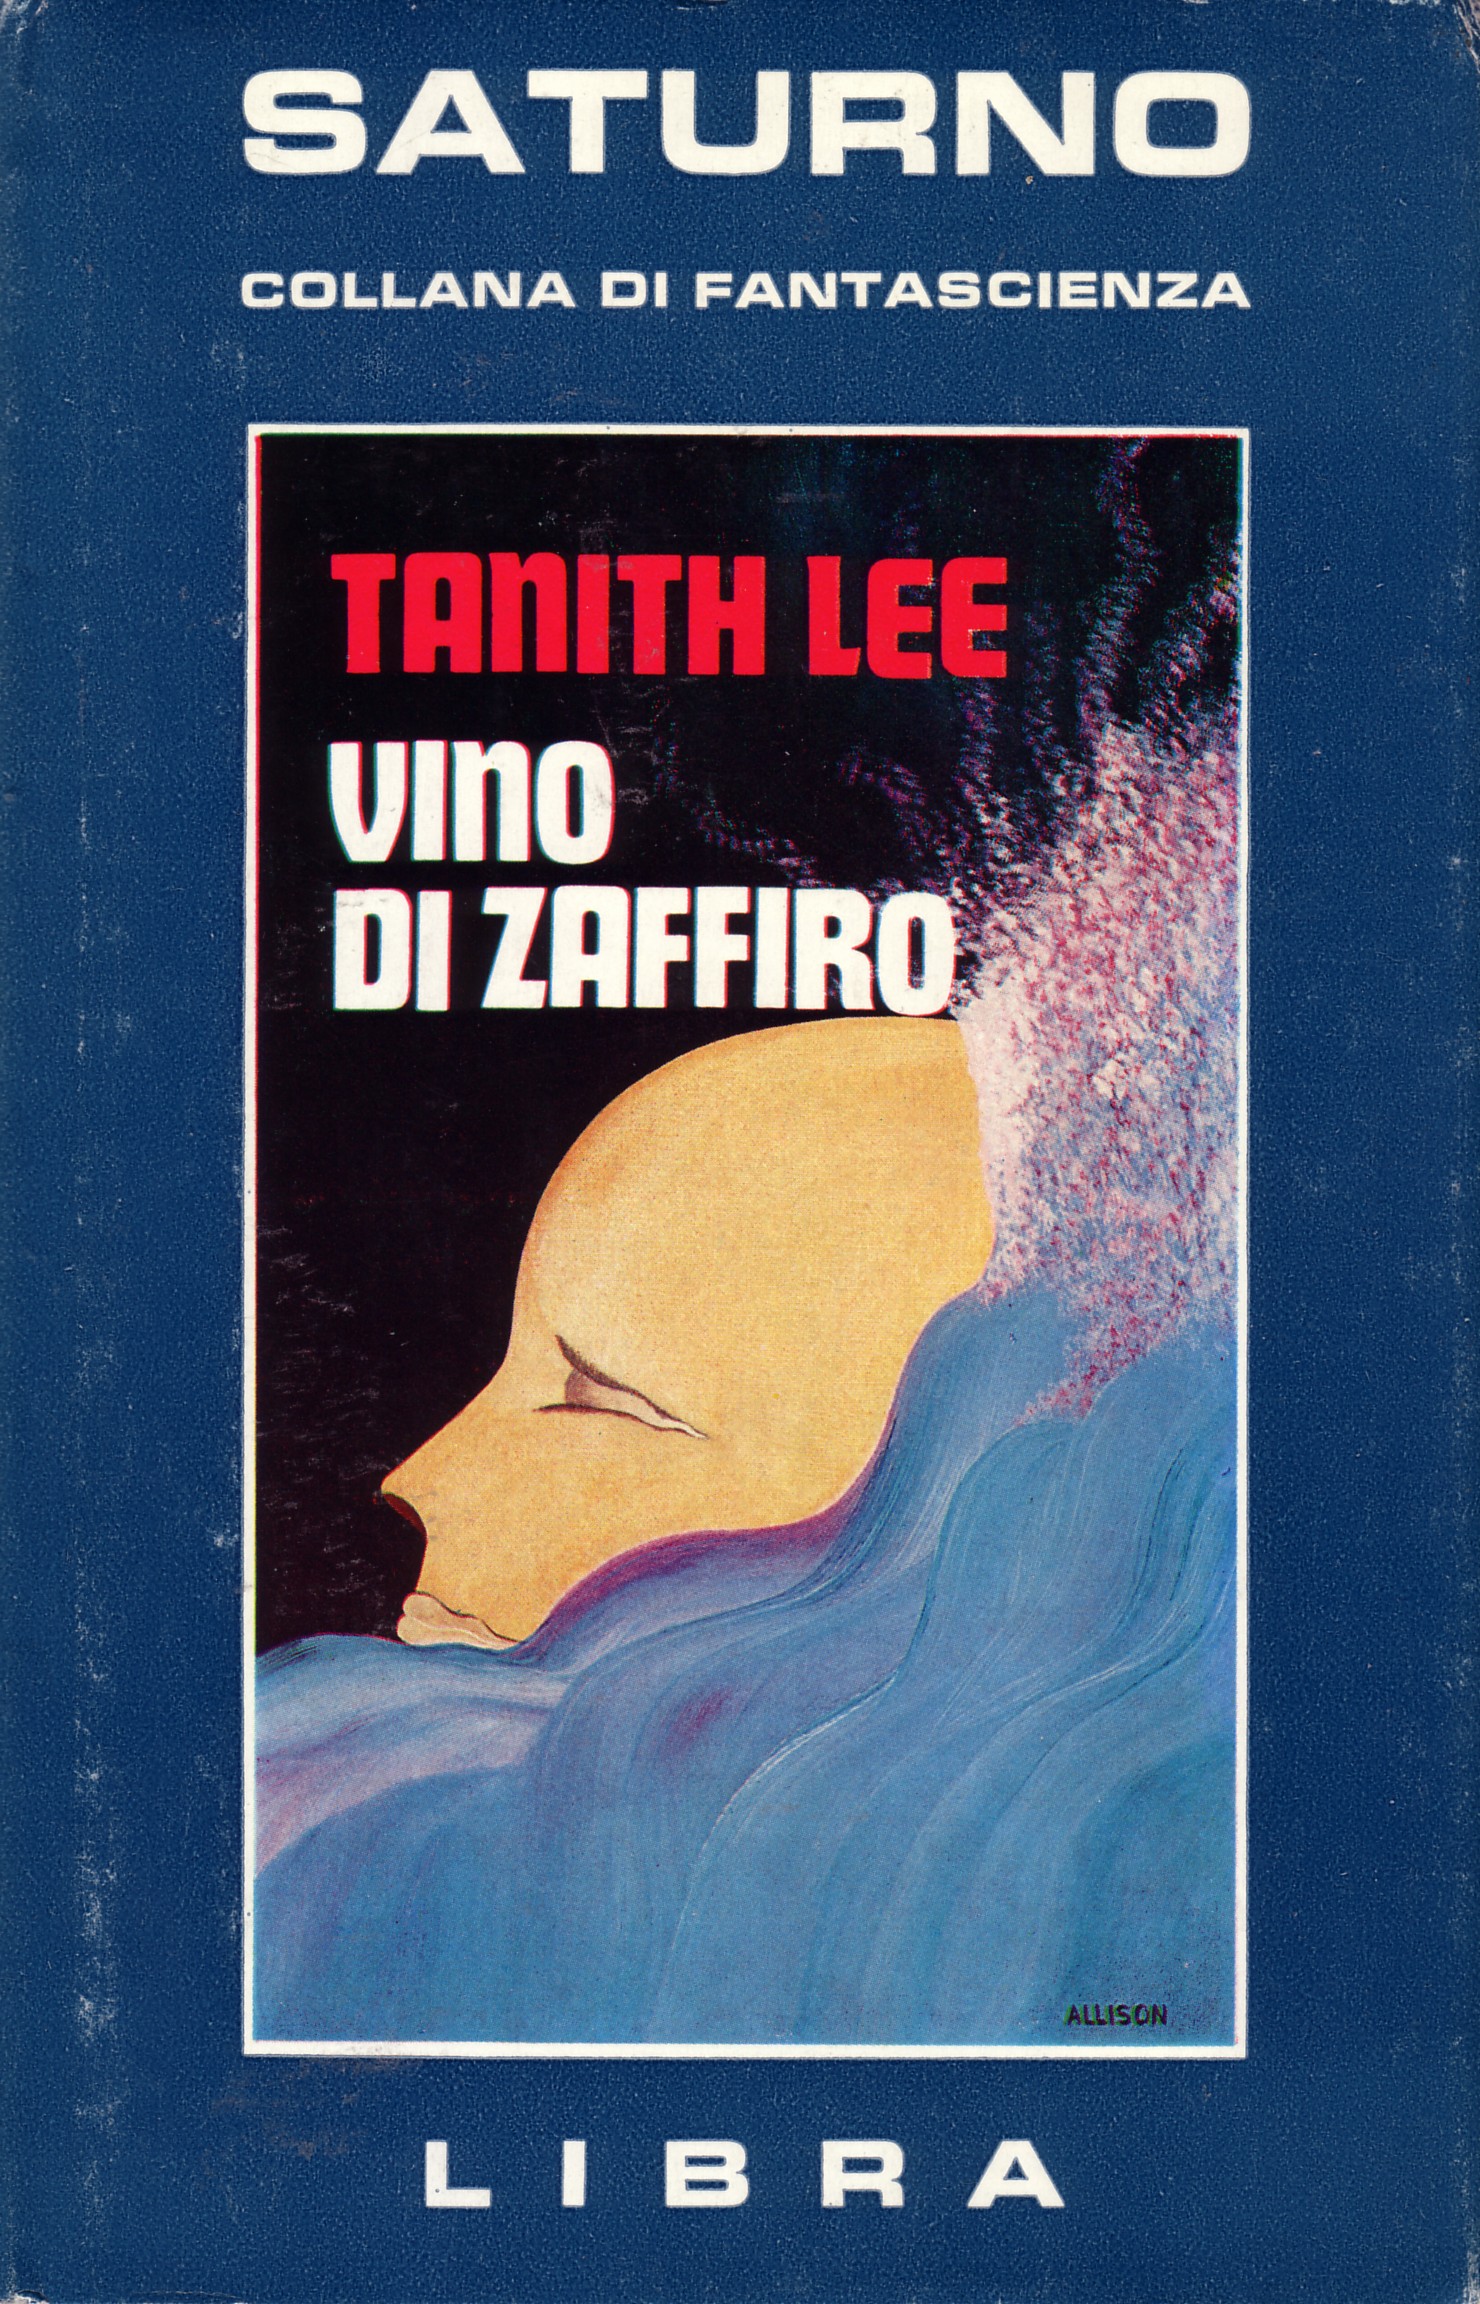 Vino Di Zaffiro (Drinking Sapphire Wine)